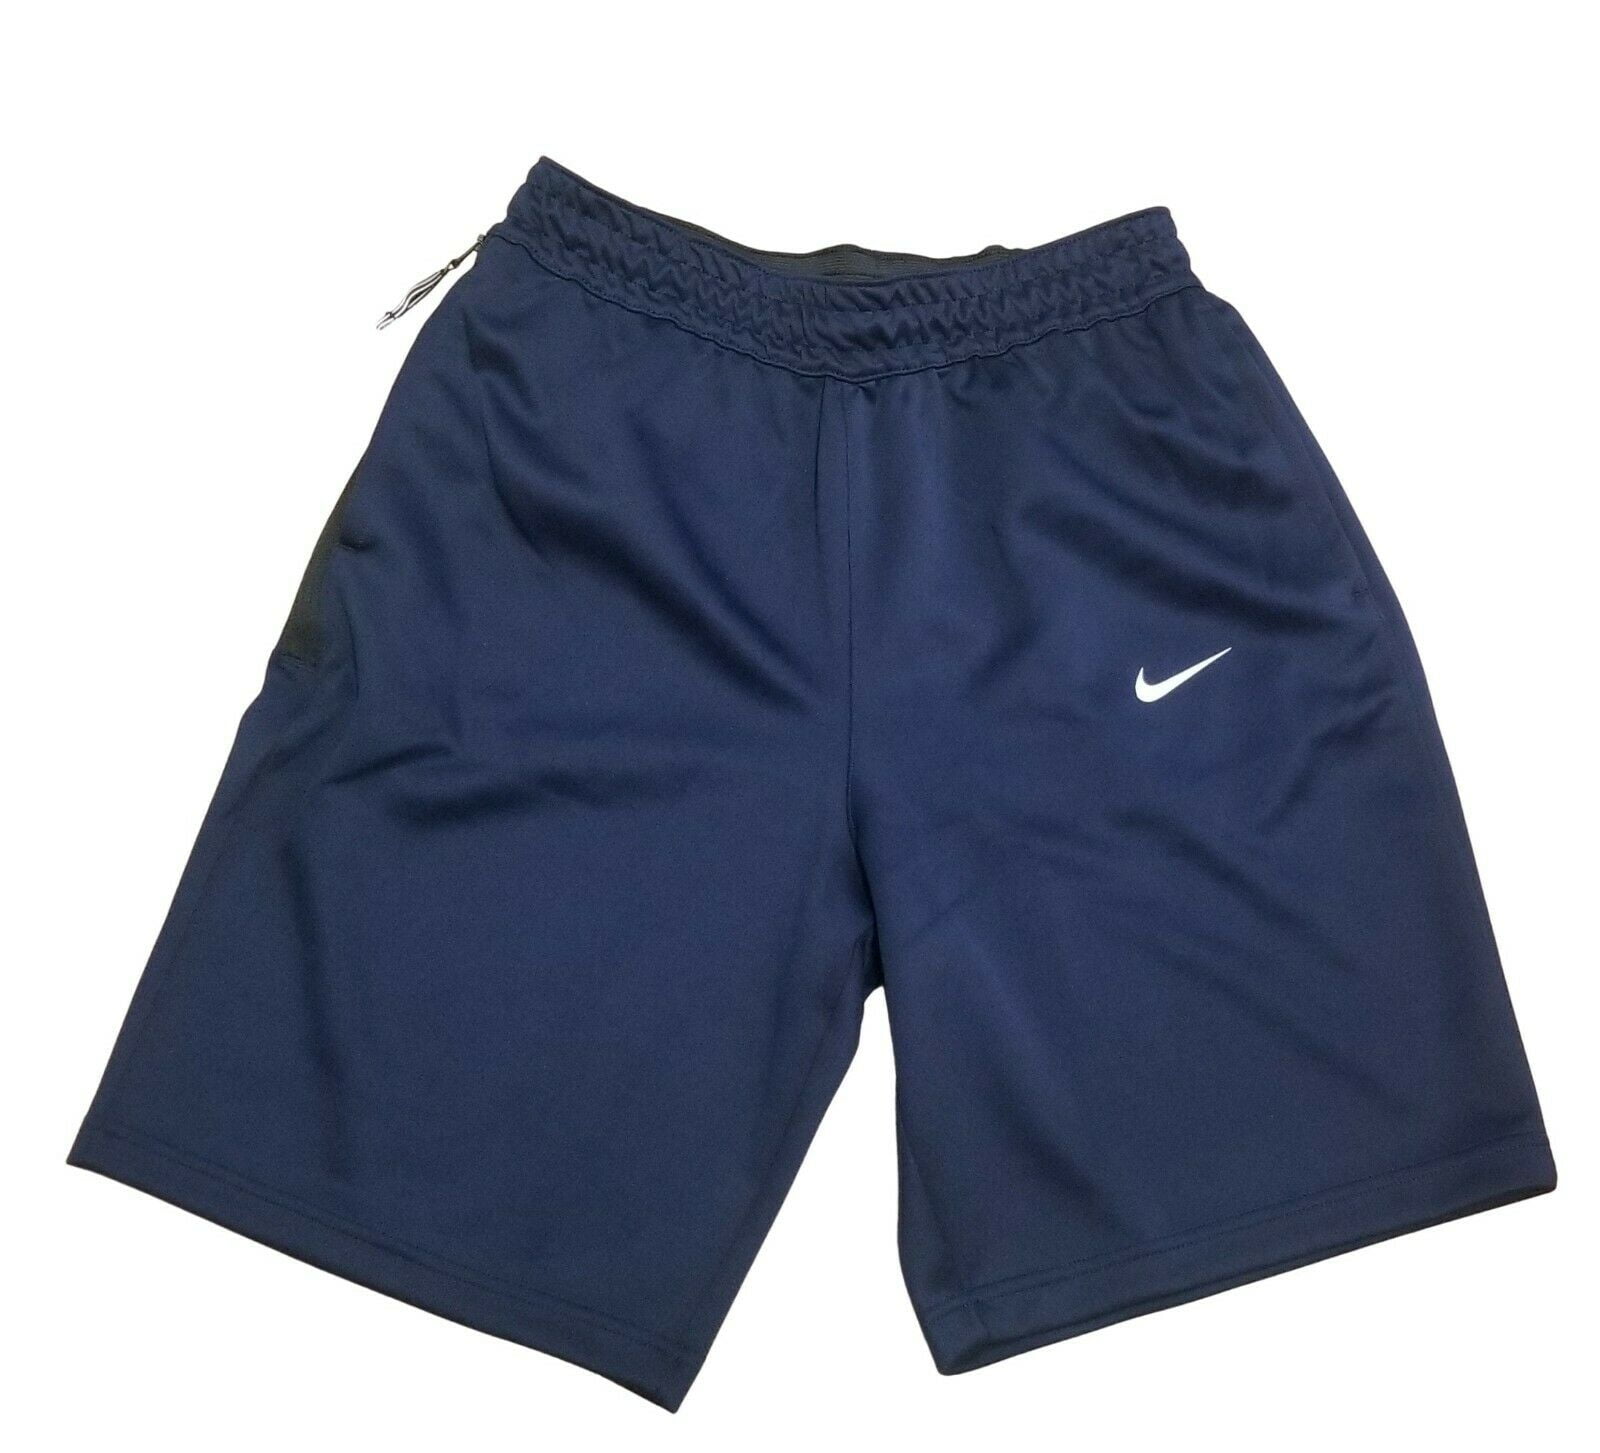 Nike Spotlight Dri-Fit Pocket Navy/White Men's Shorts Size L - Walmart.com